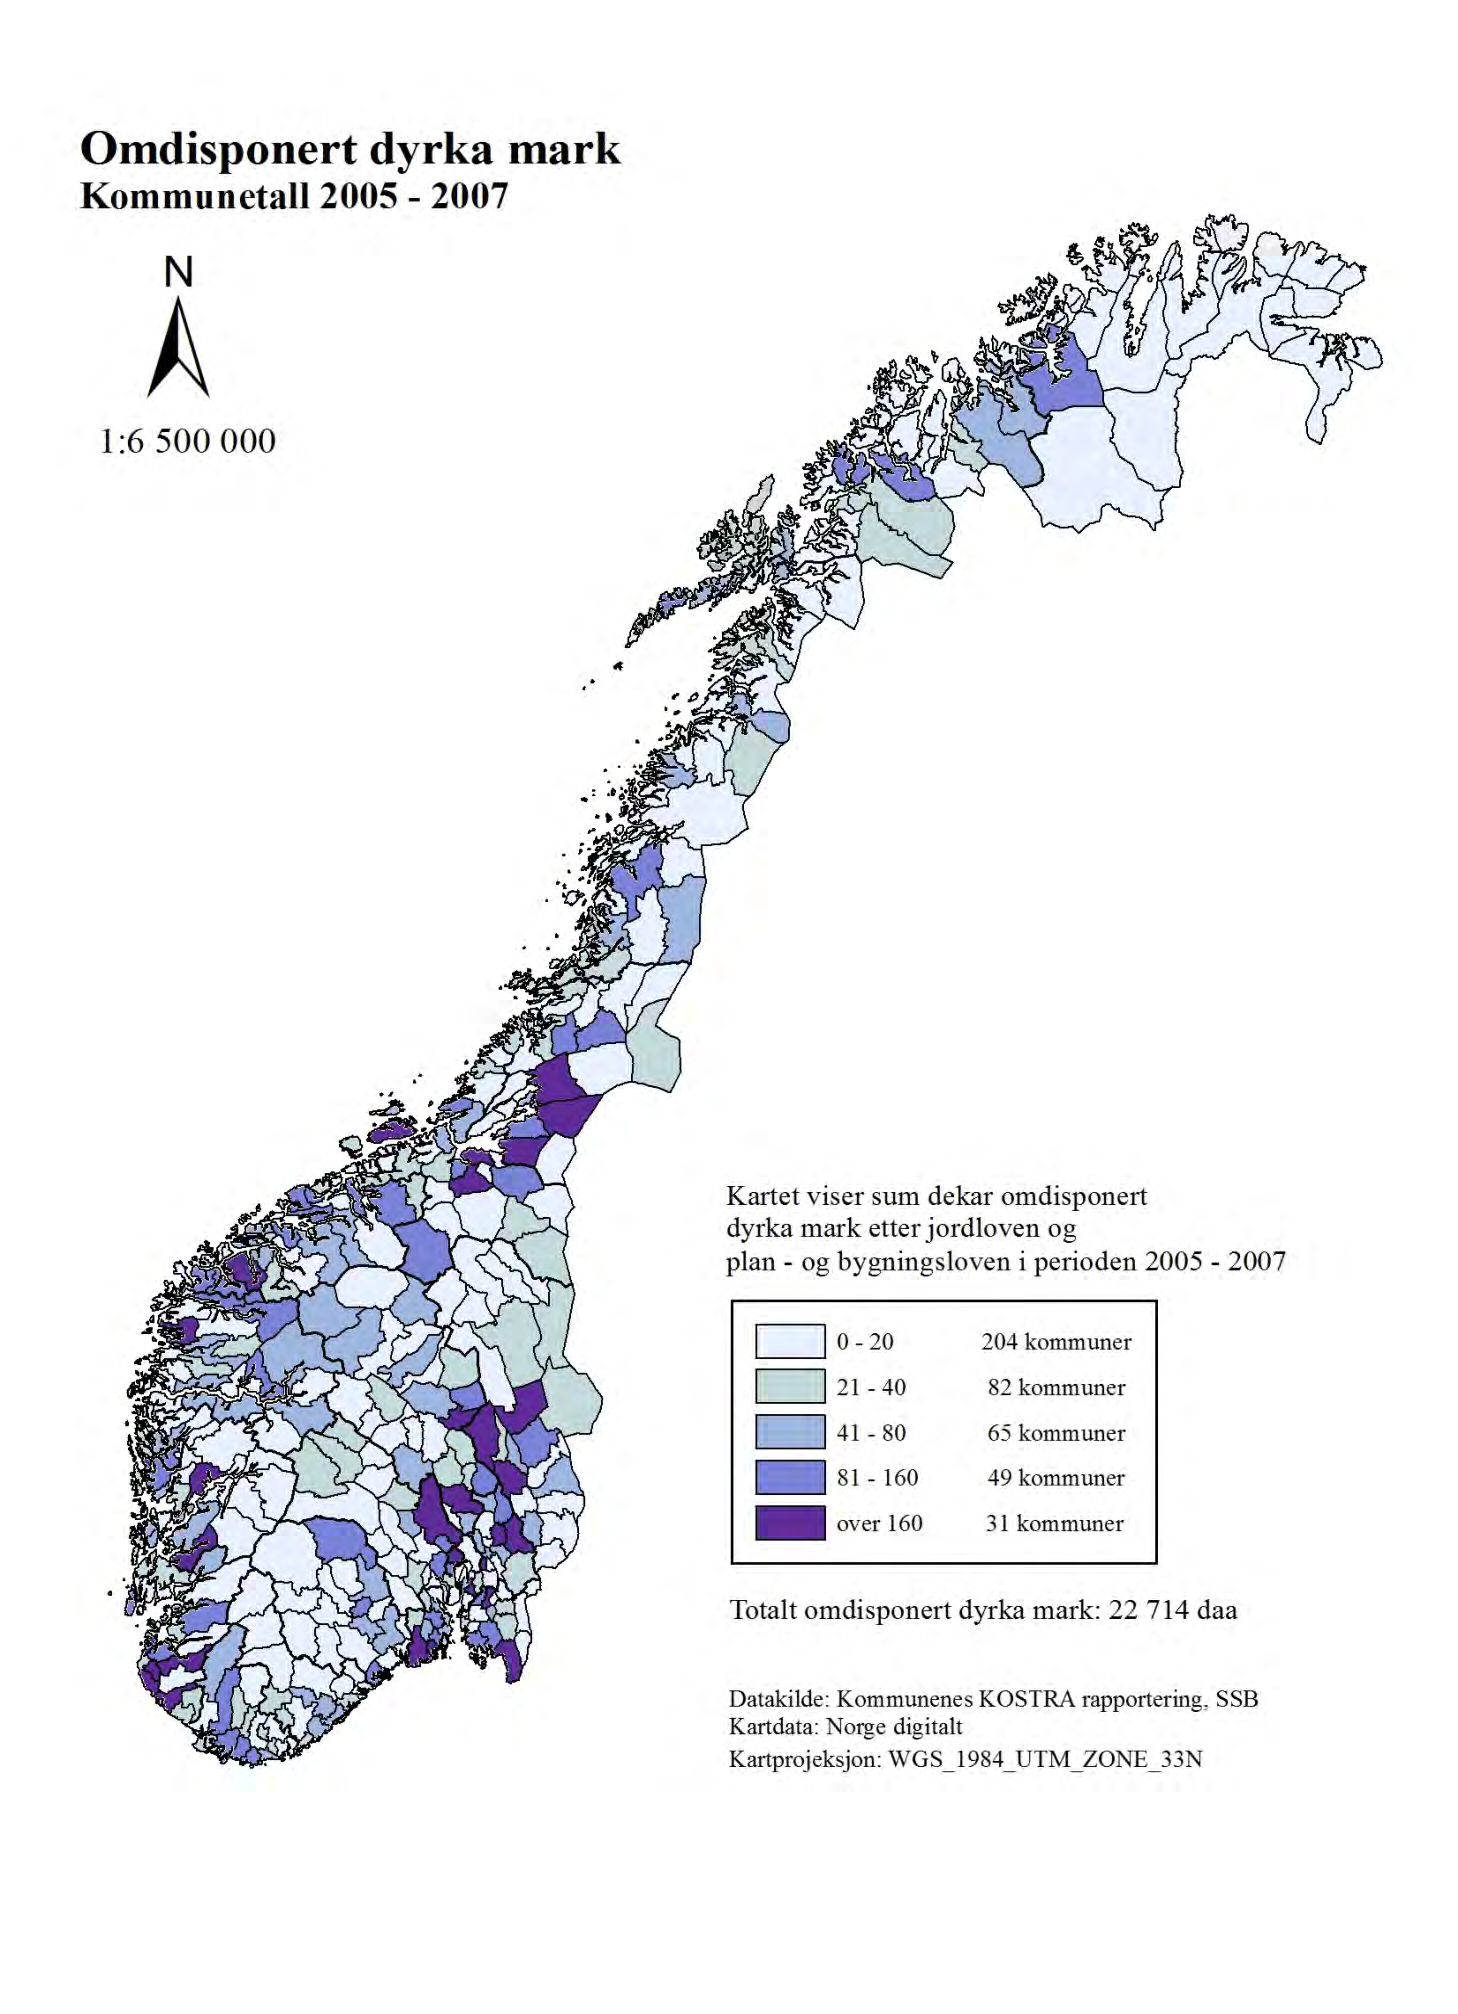 Kart 1: Omdisponert dyrka mark, kommuner 2005-10.